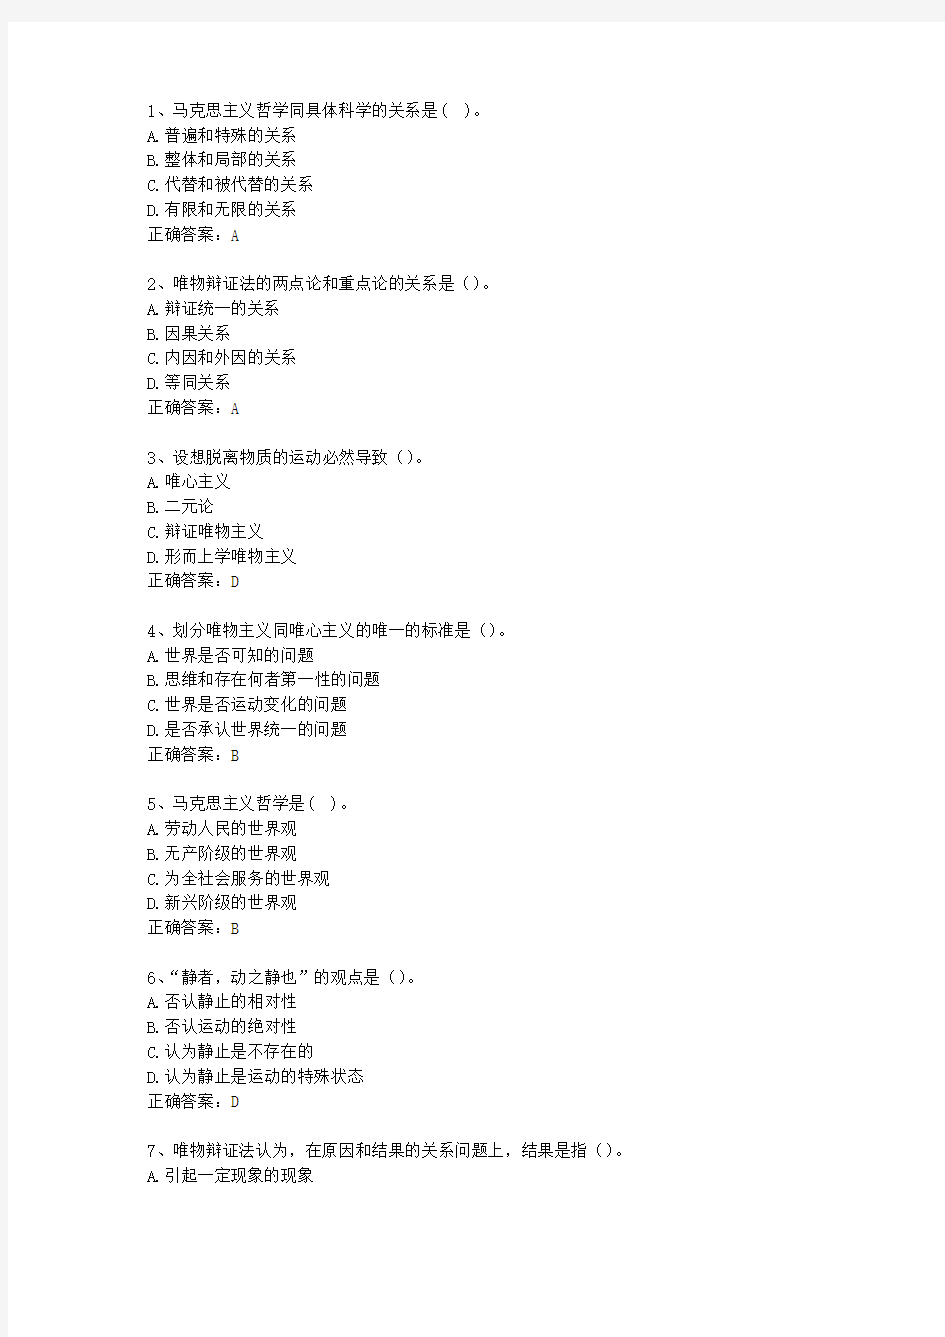 2013云南省教师招聘考试公共基础知识考试技巧、答题原则